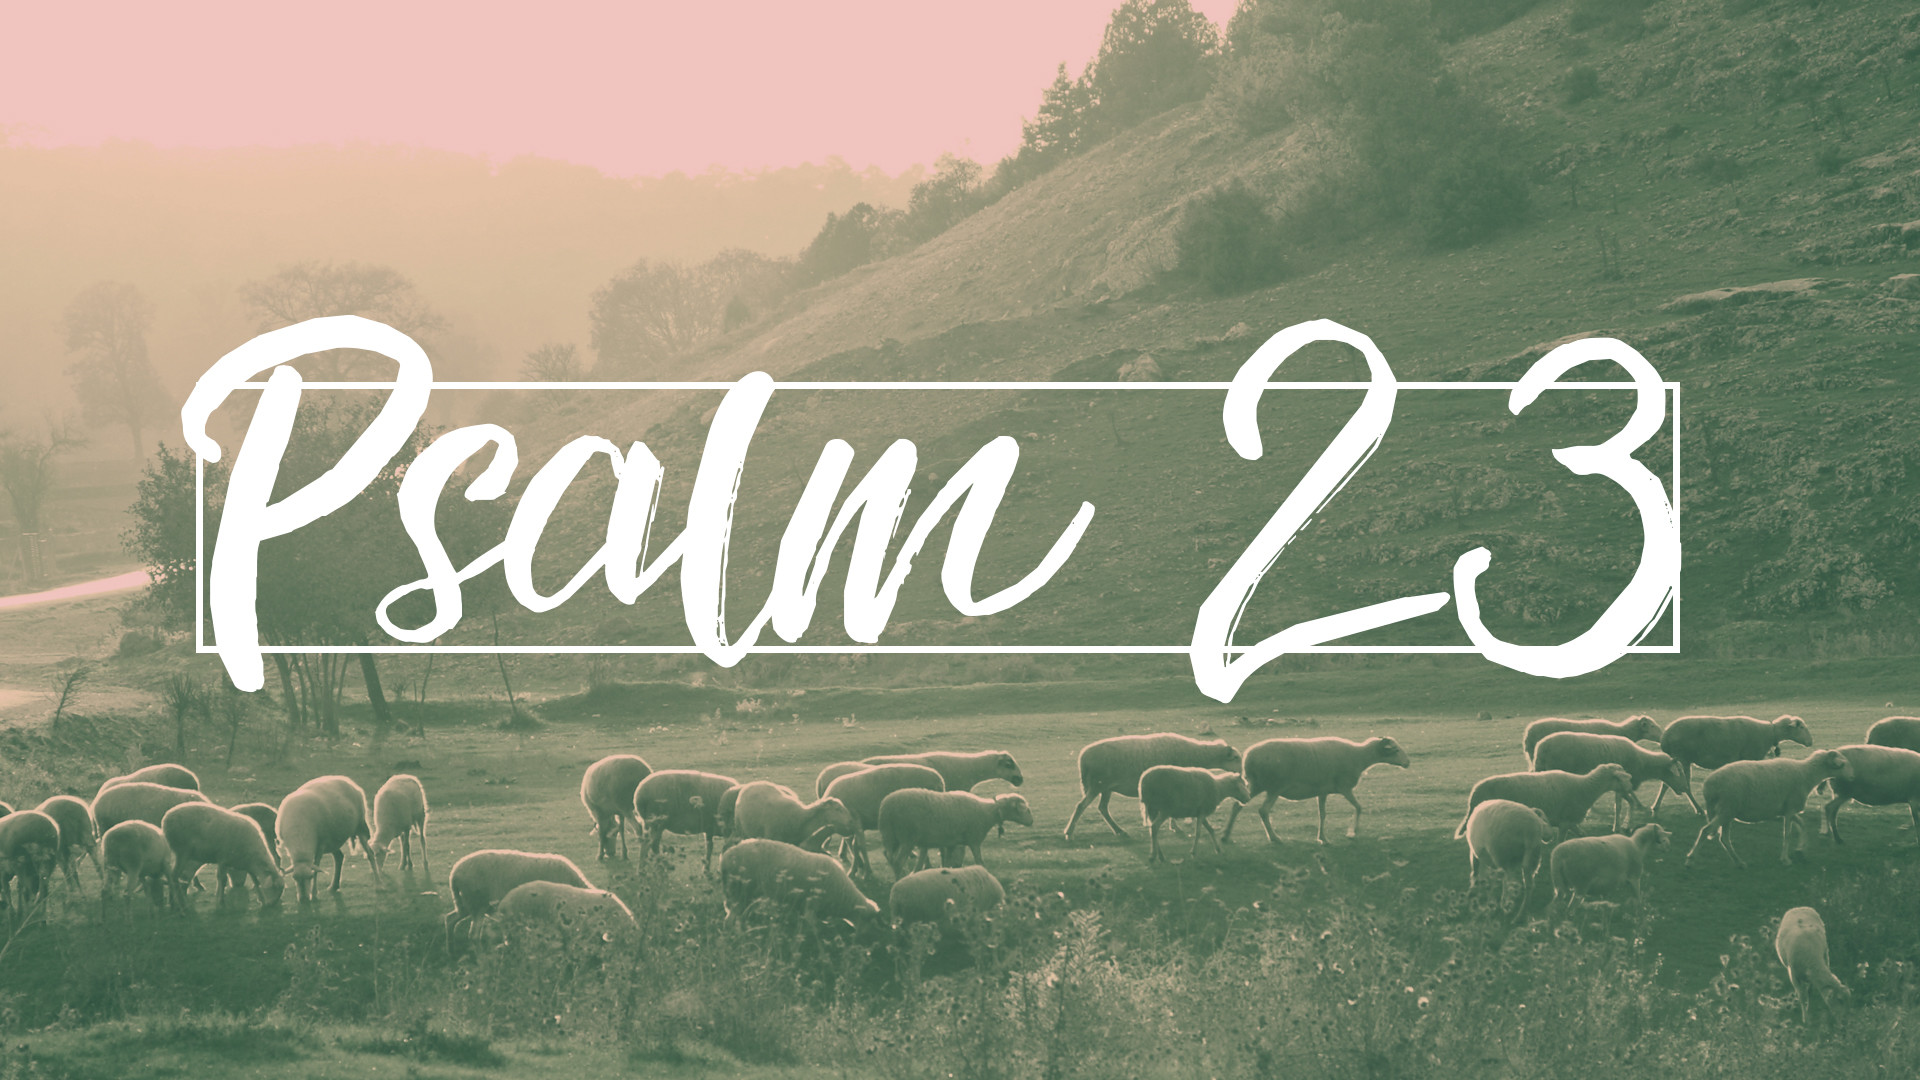 psalm 23 wallpaper,font,text,natural landscape,morning,grass